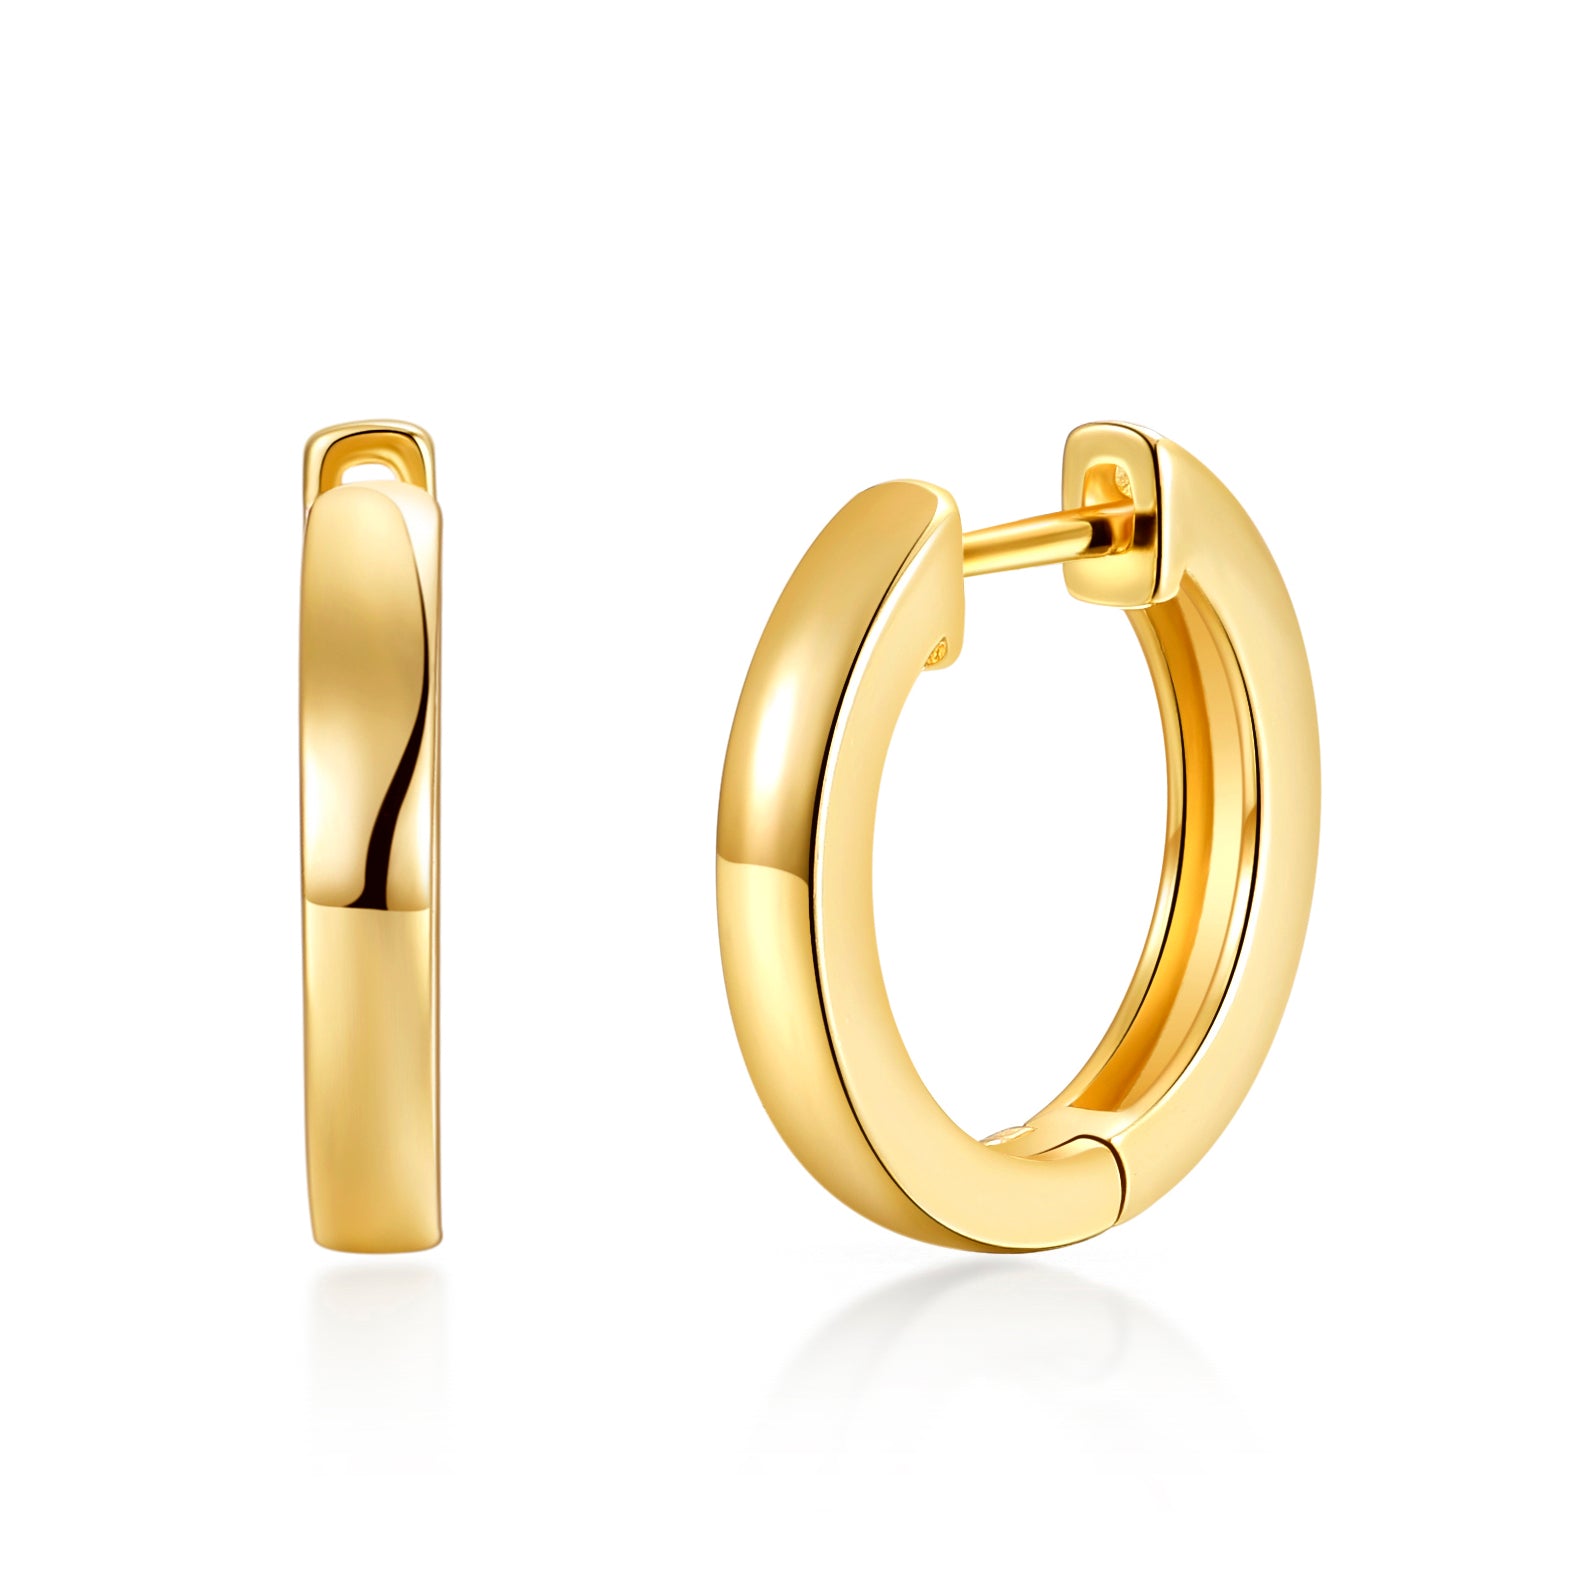 Gold Plated Hoop Earrings by Philip Jones Jewellery